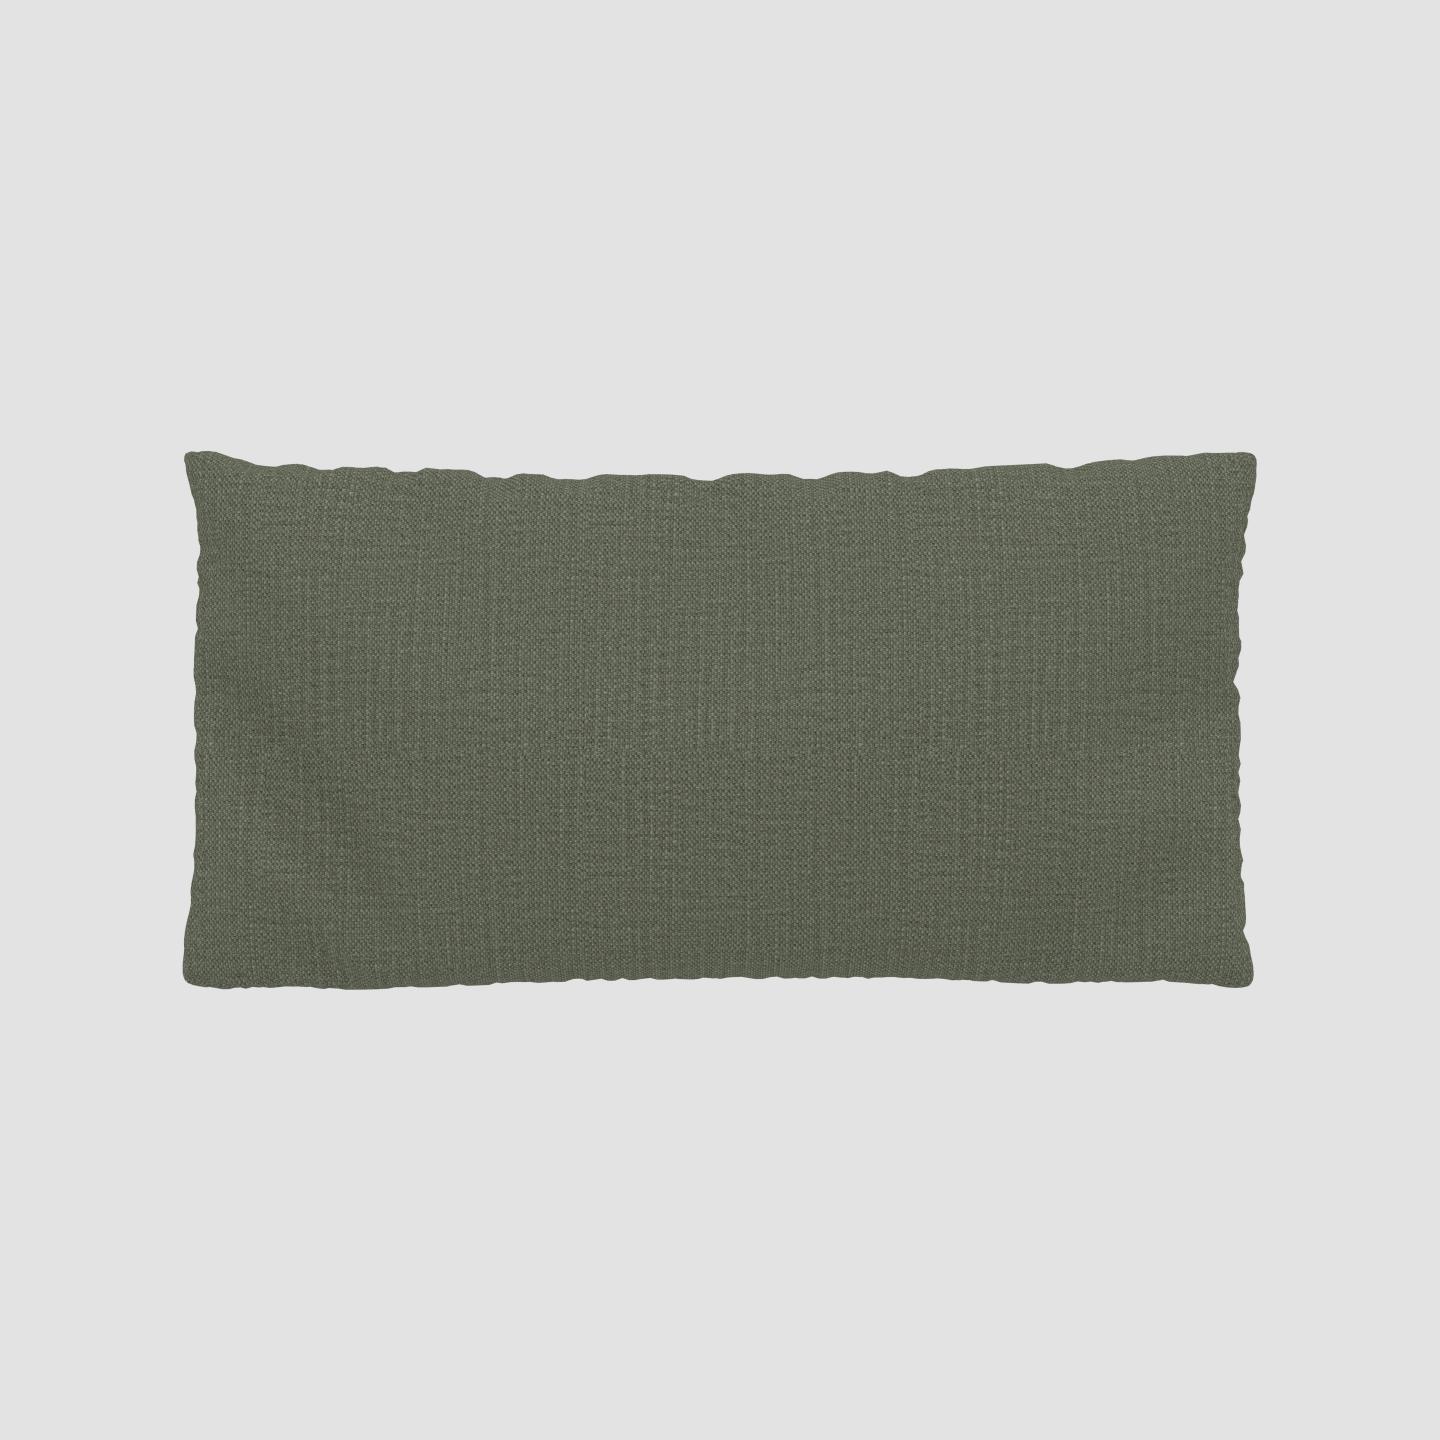 MYCS Coussin Vert Olive - 40x80 cm - Housse en Textile tissé. Coussin de canapé moelleux